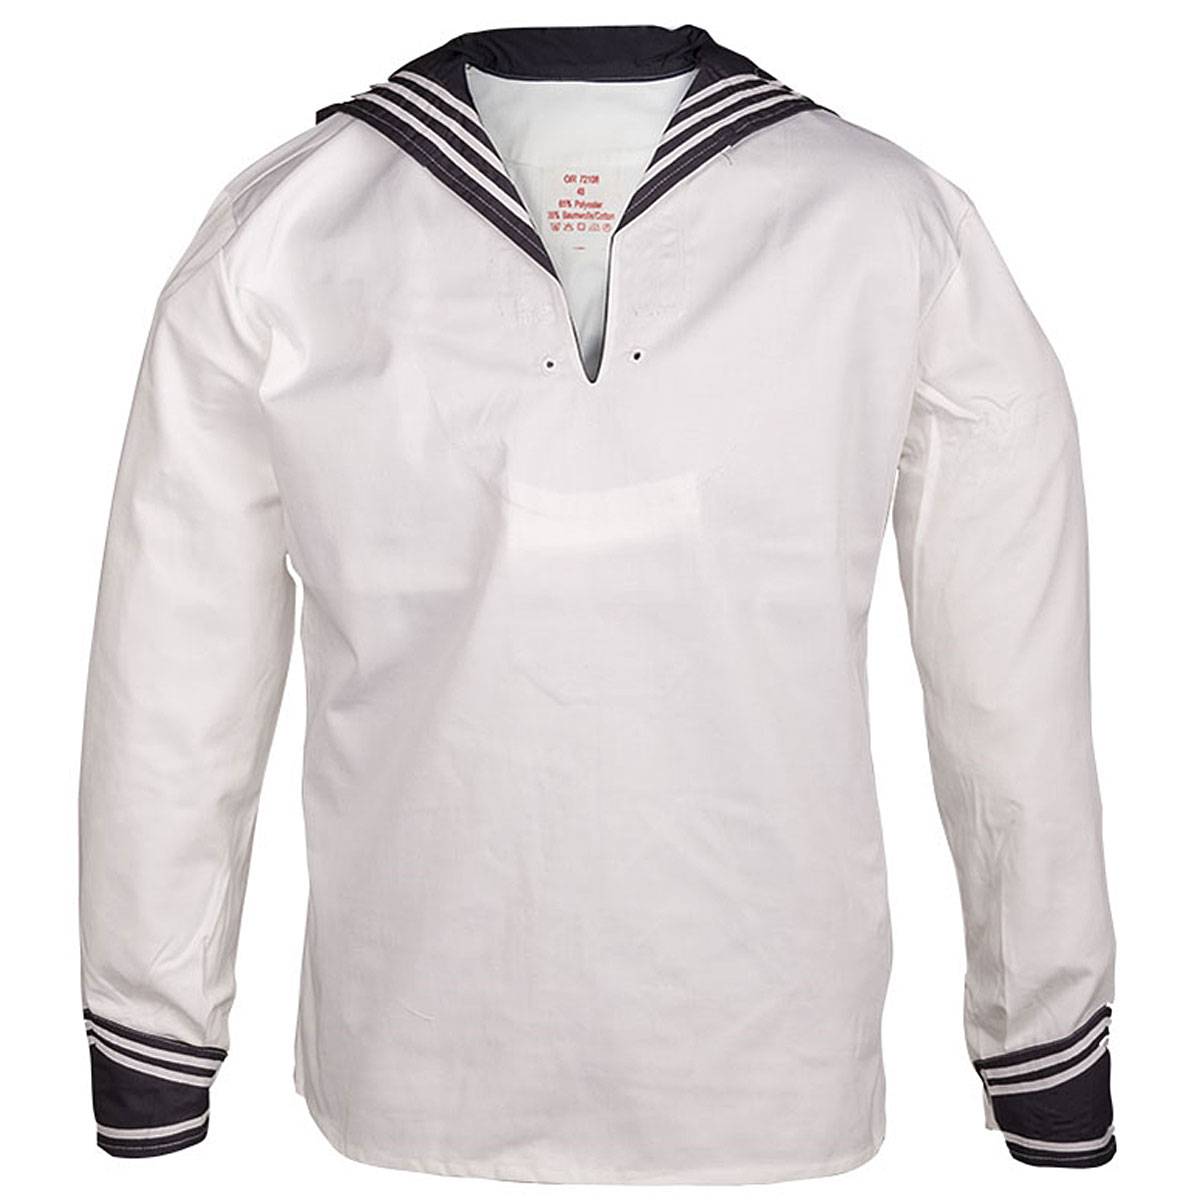 BW Marinehemd weiß mit Marinekragen Kielerhemd  Grösse 48-60